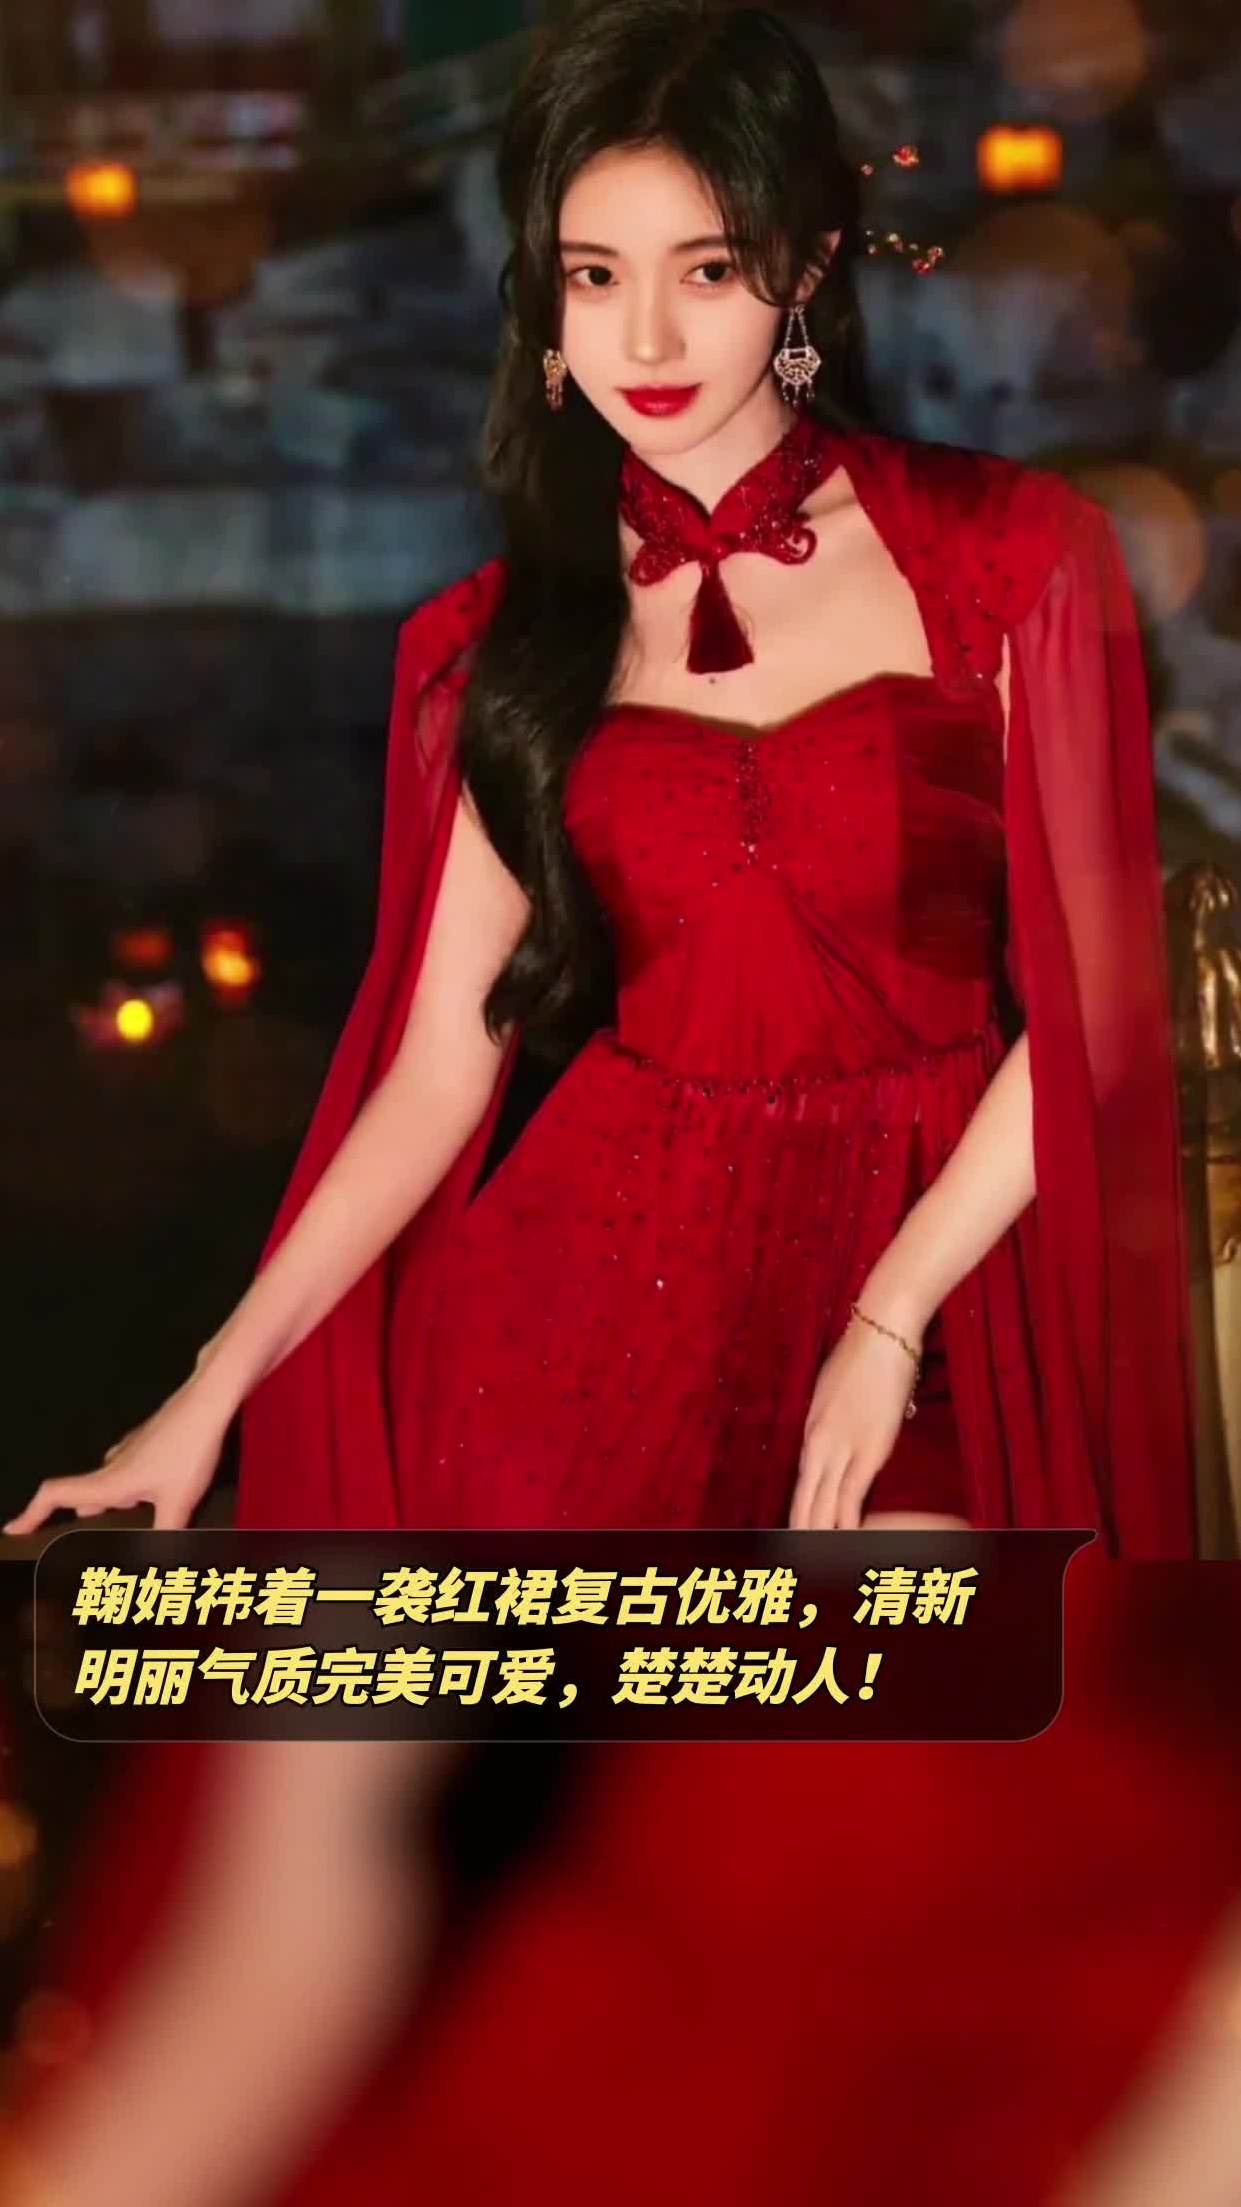 鞠婧祎着一袭红裙复古优雅,清新明丽气质完美可爱,楚楚动人!